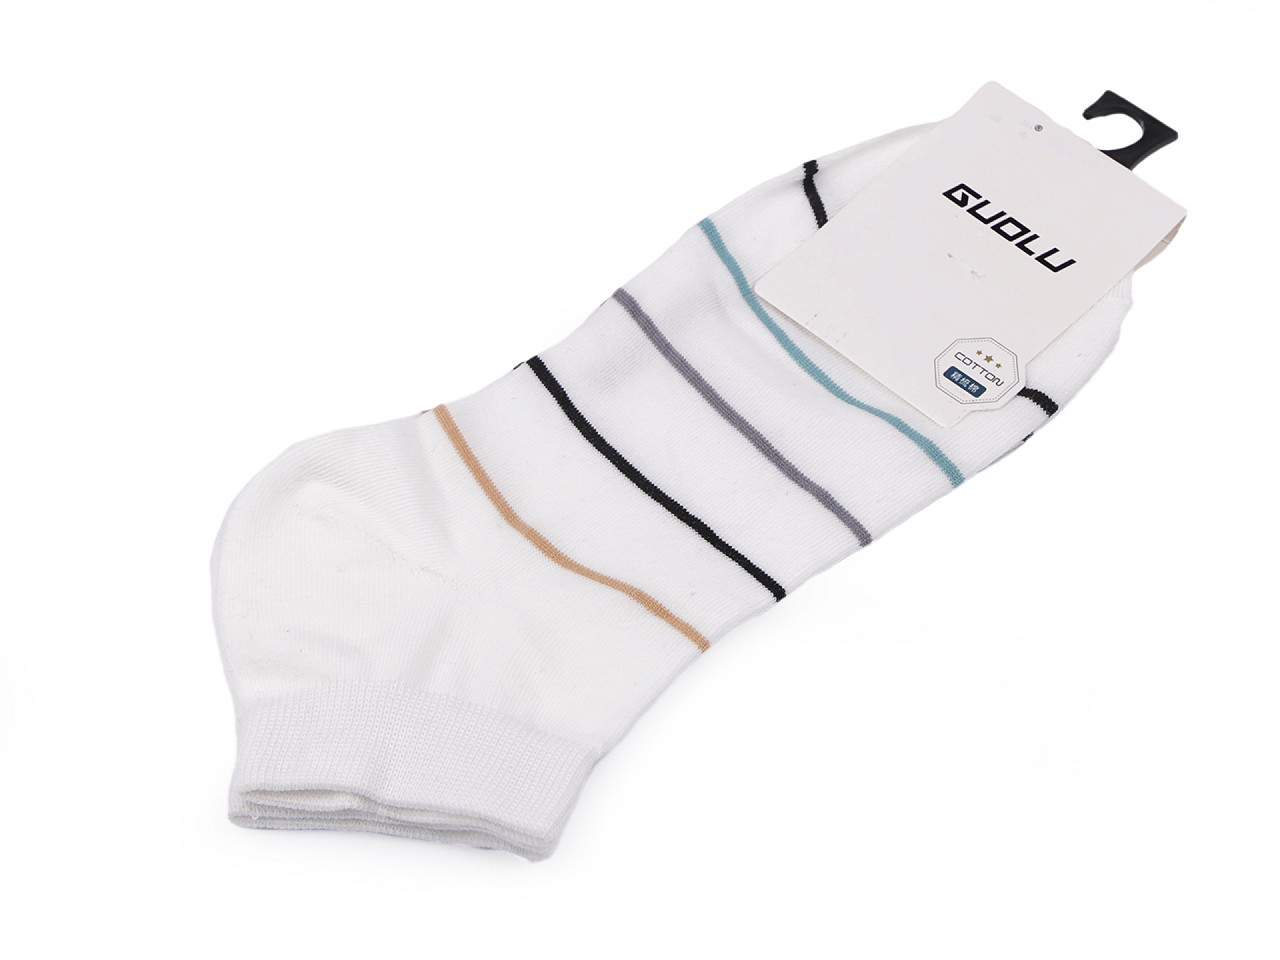 Pánské / chlapecké bavlněné ponožky kotníkové, barva 6 bílá proužky